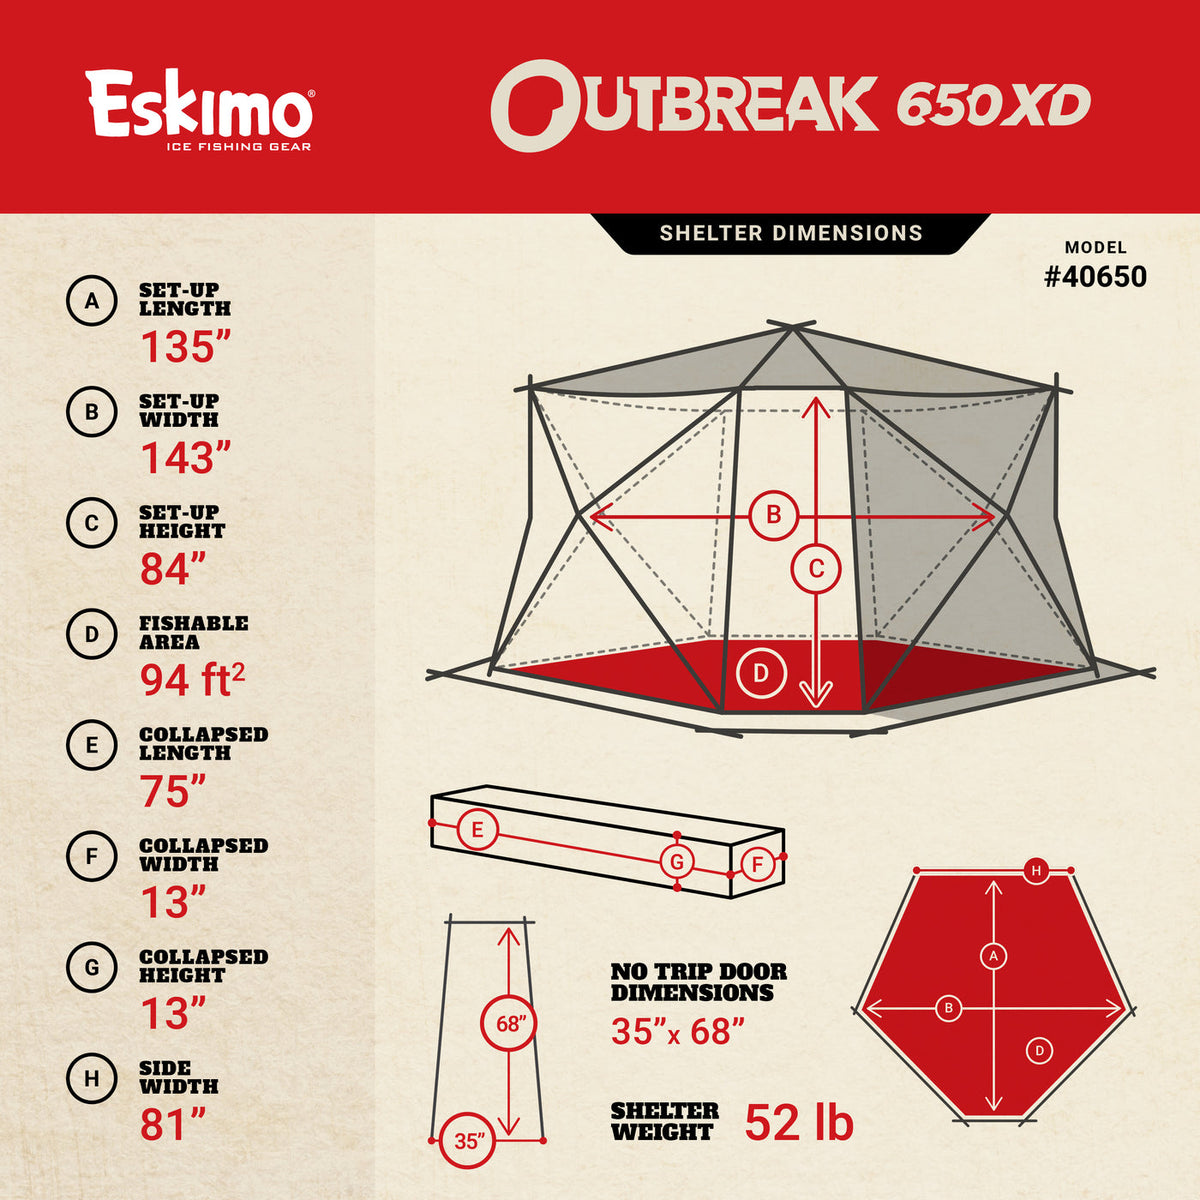 Eskimo Outbreak 650XD